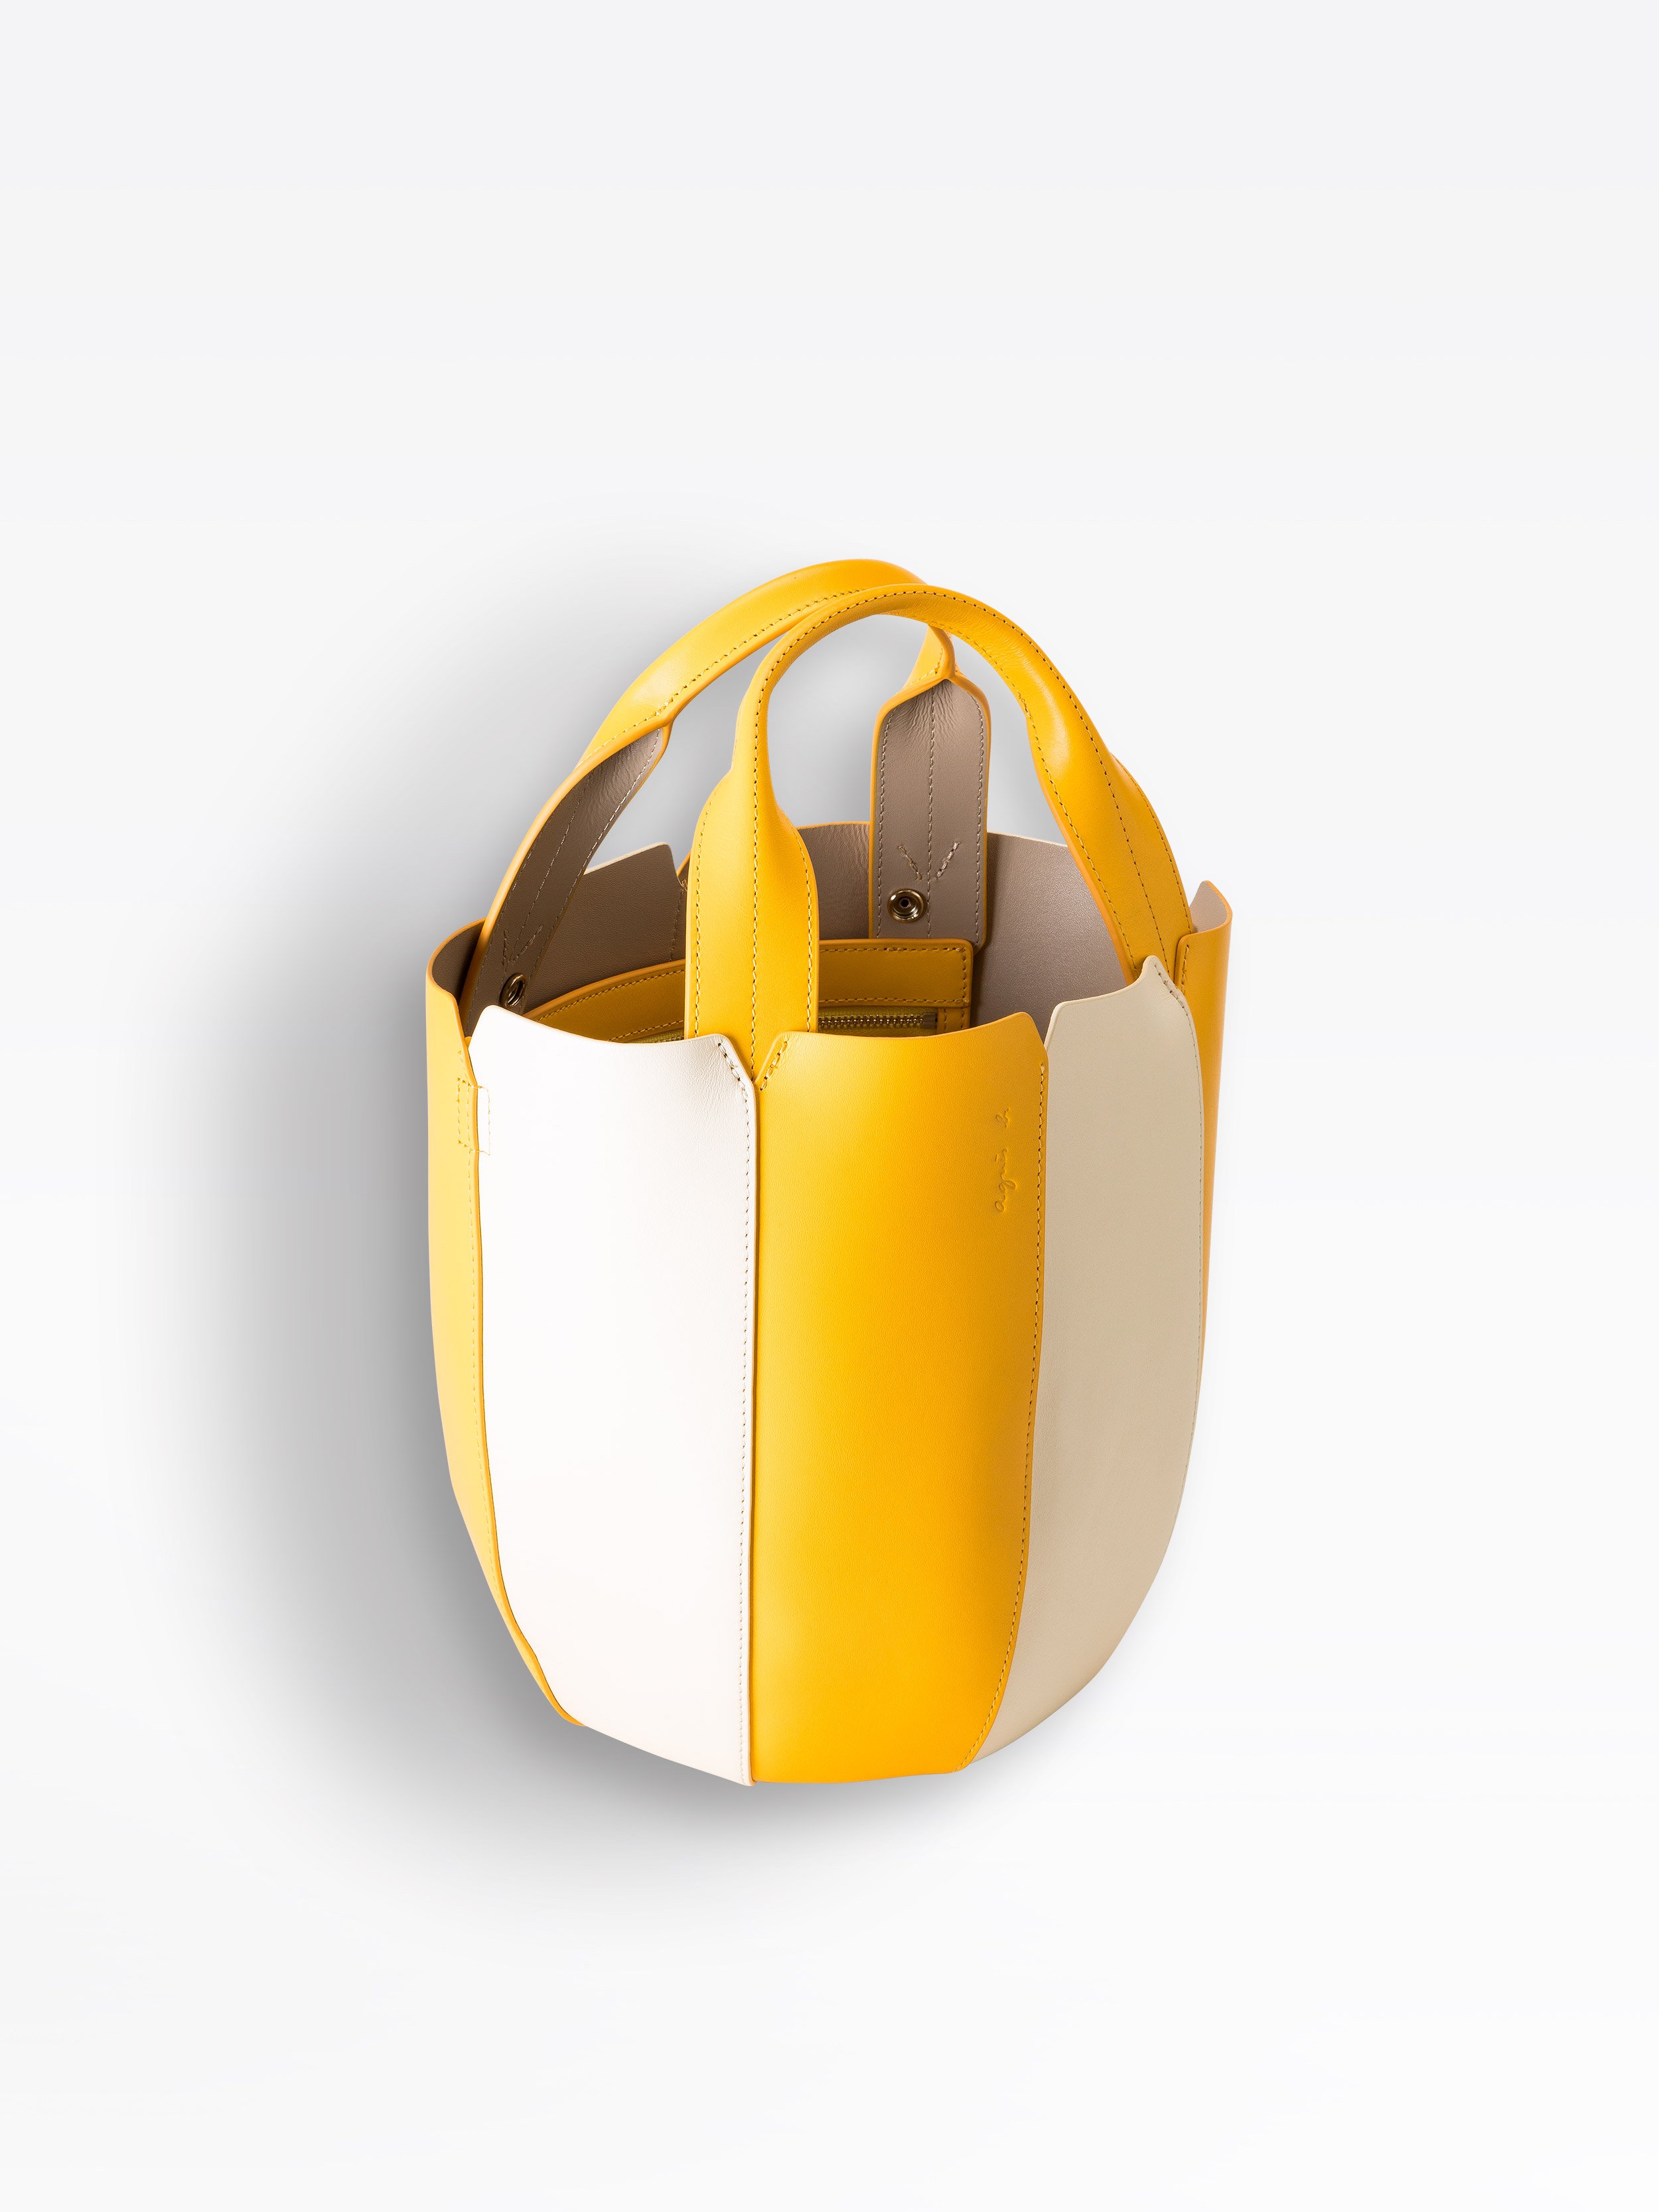 yellow leather bucket bag